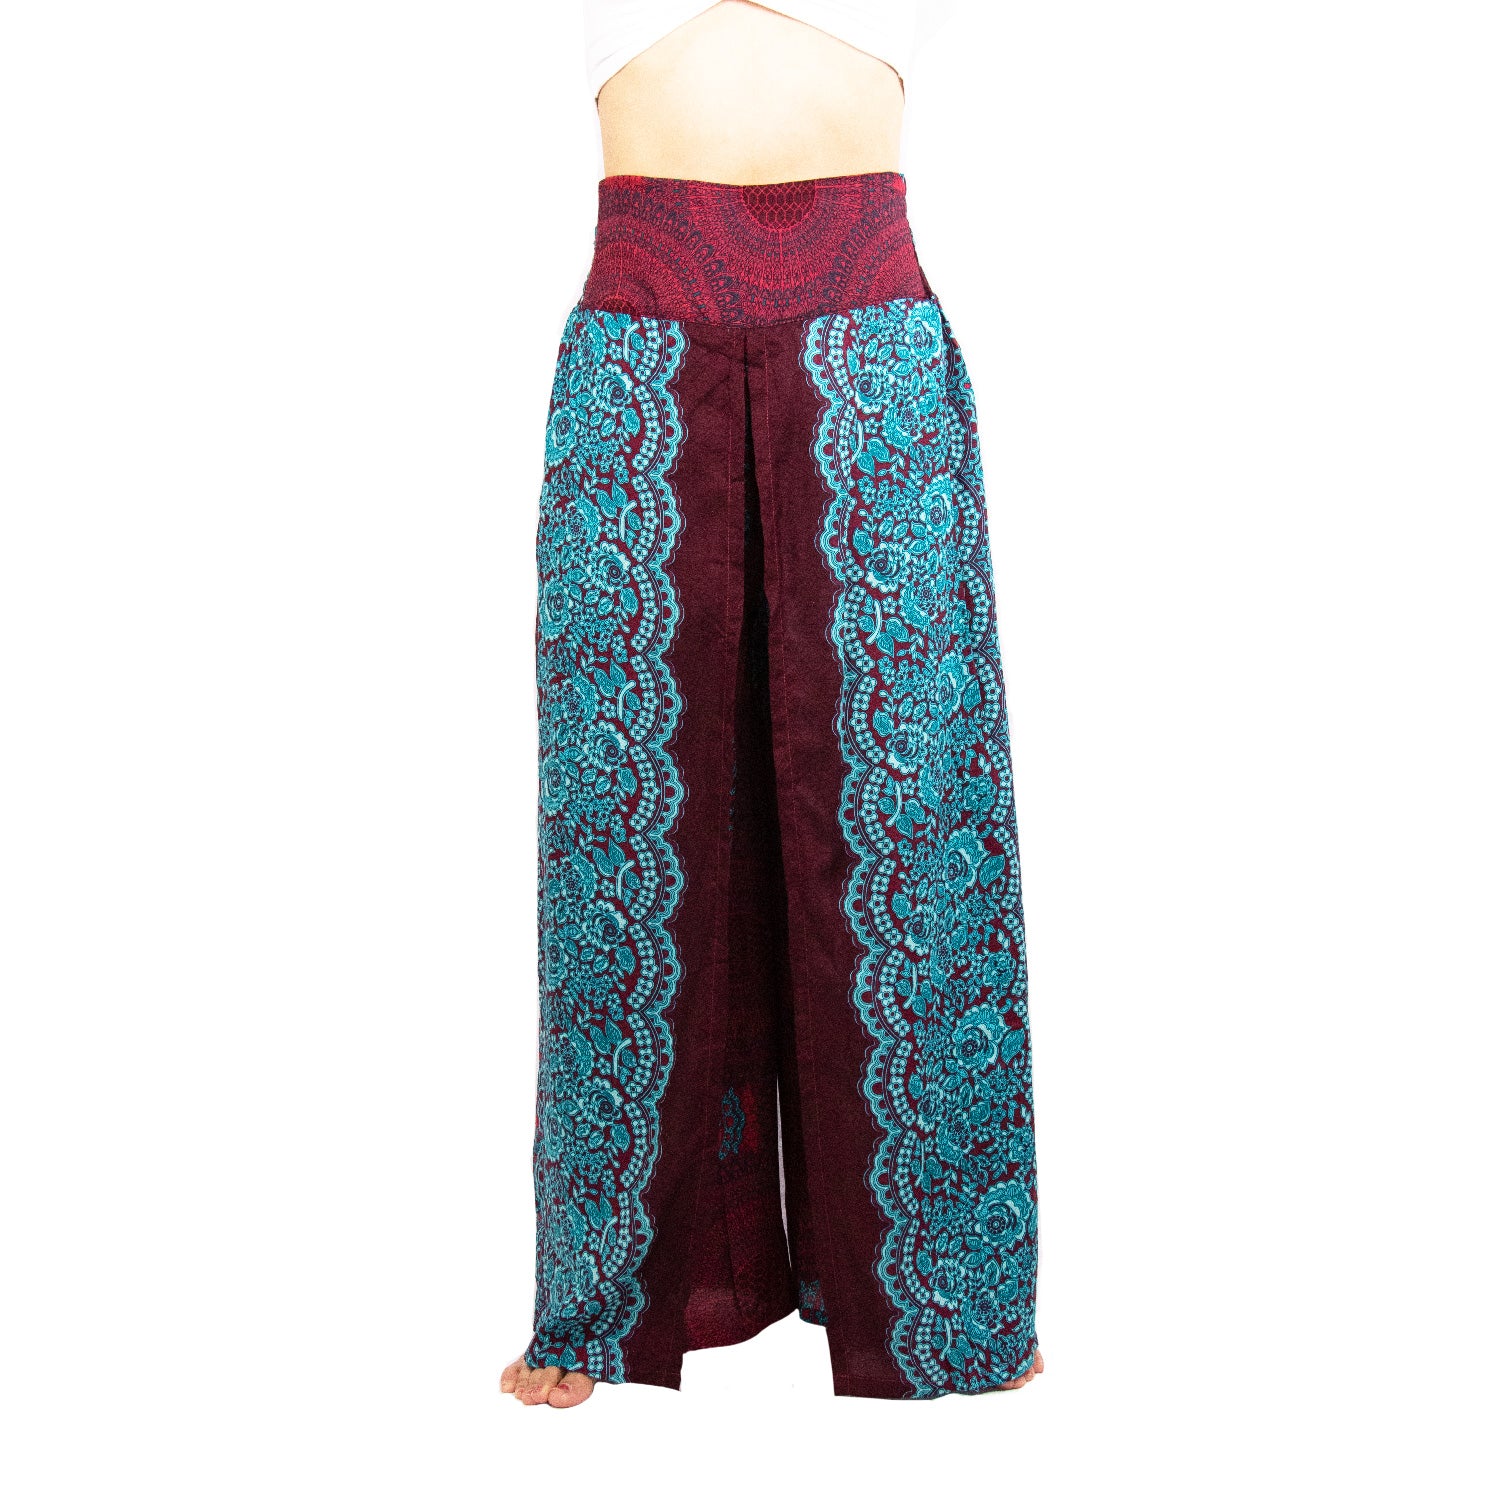 Pantalon de yoga ample Taj Mahal 3/4 fabriqué en Suisse - Yoga Boutique